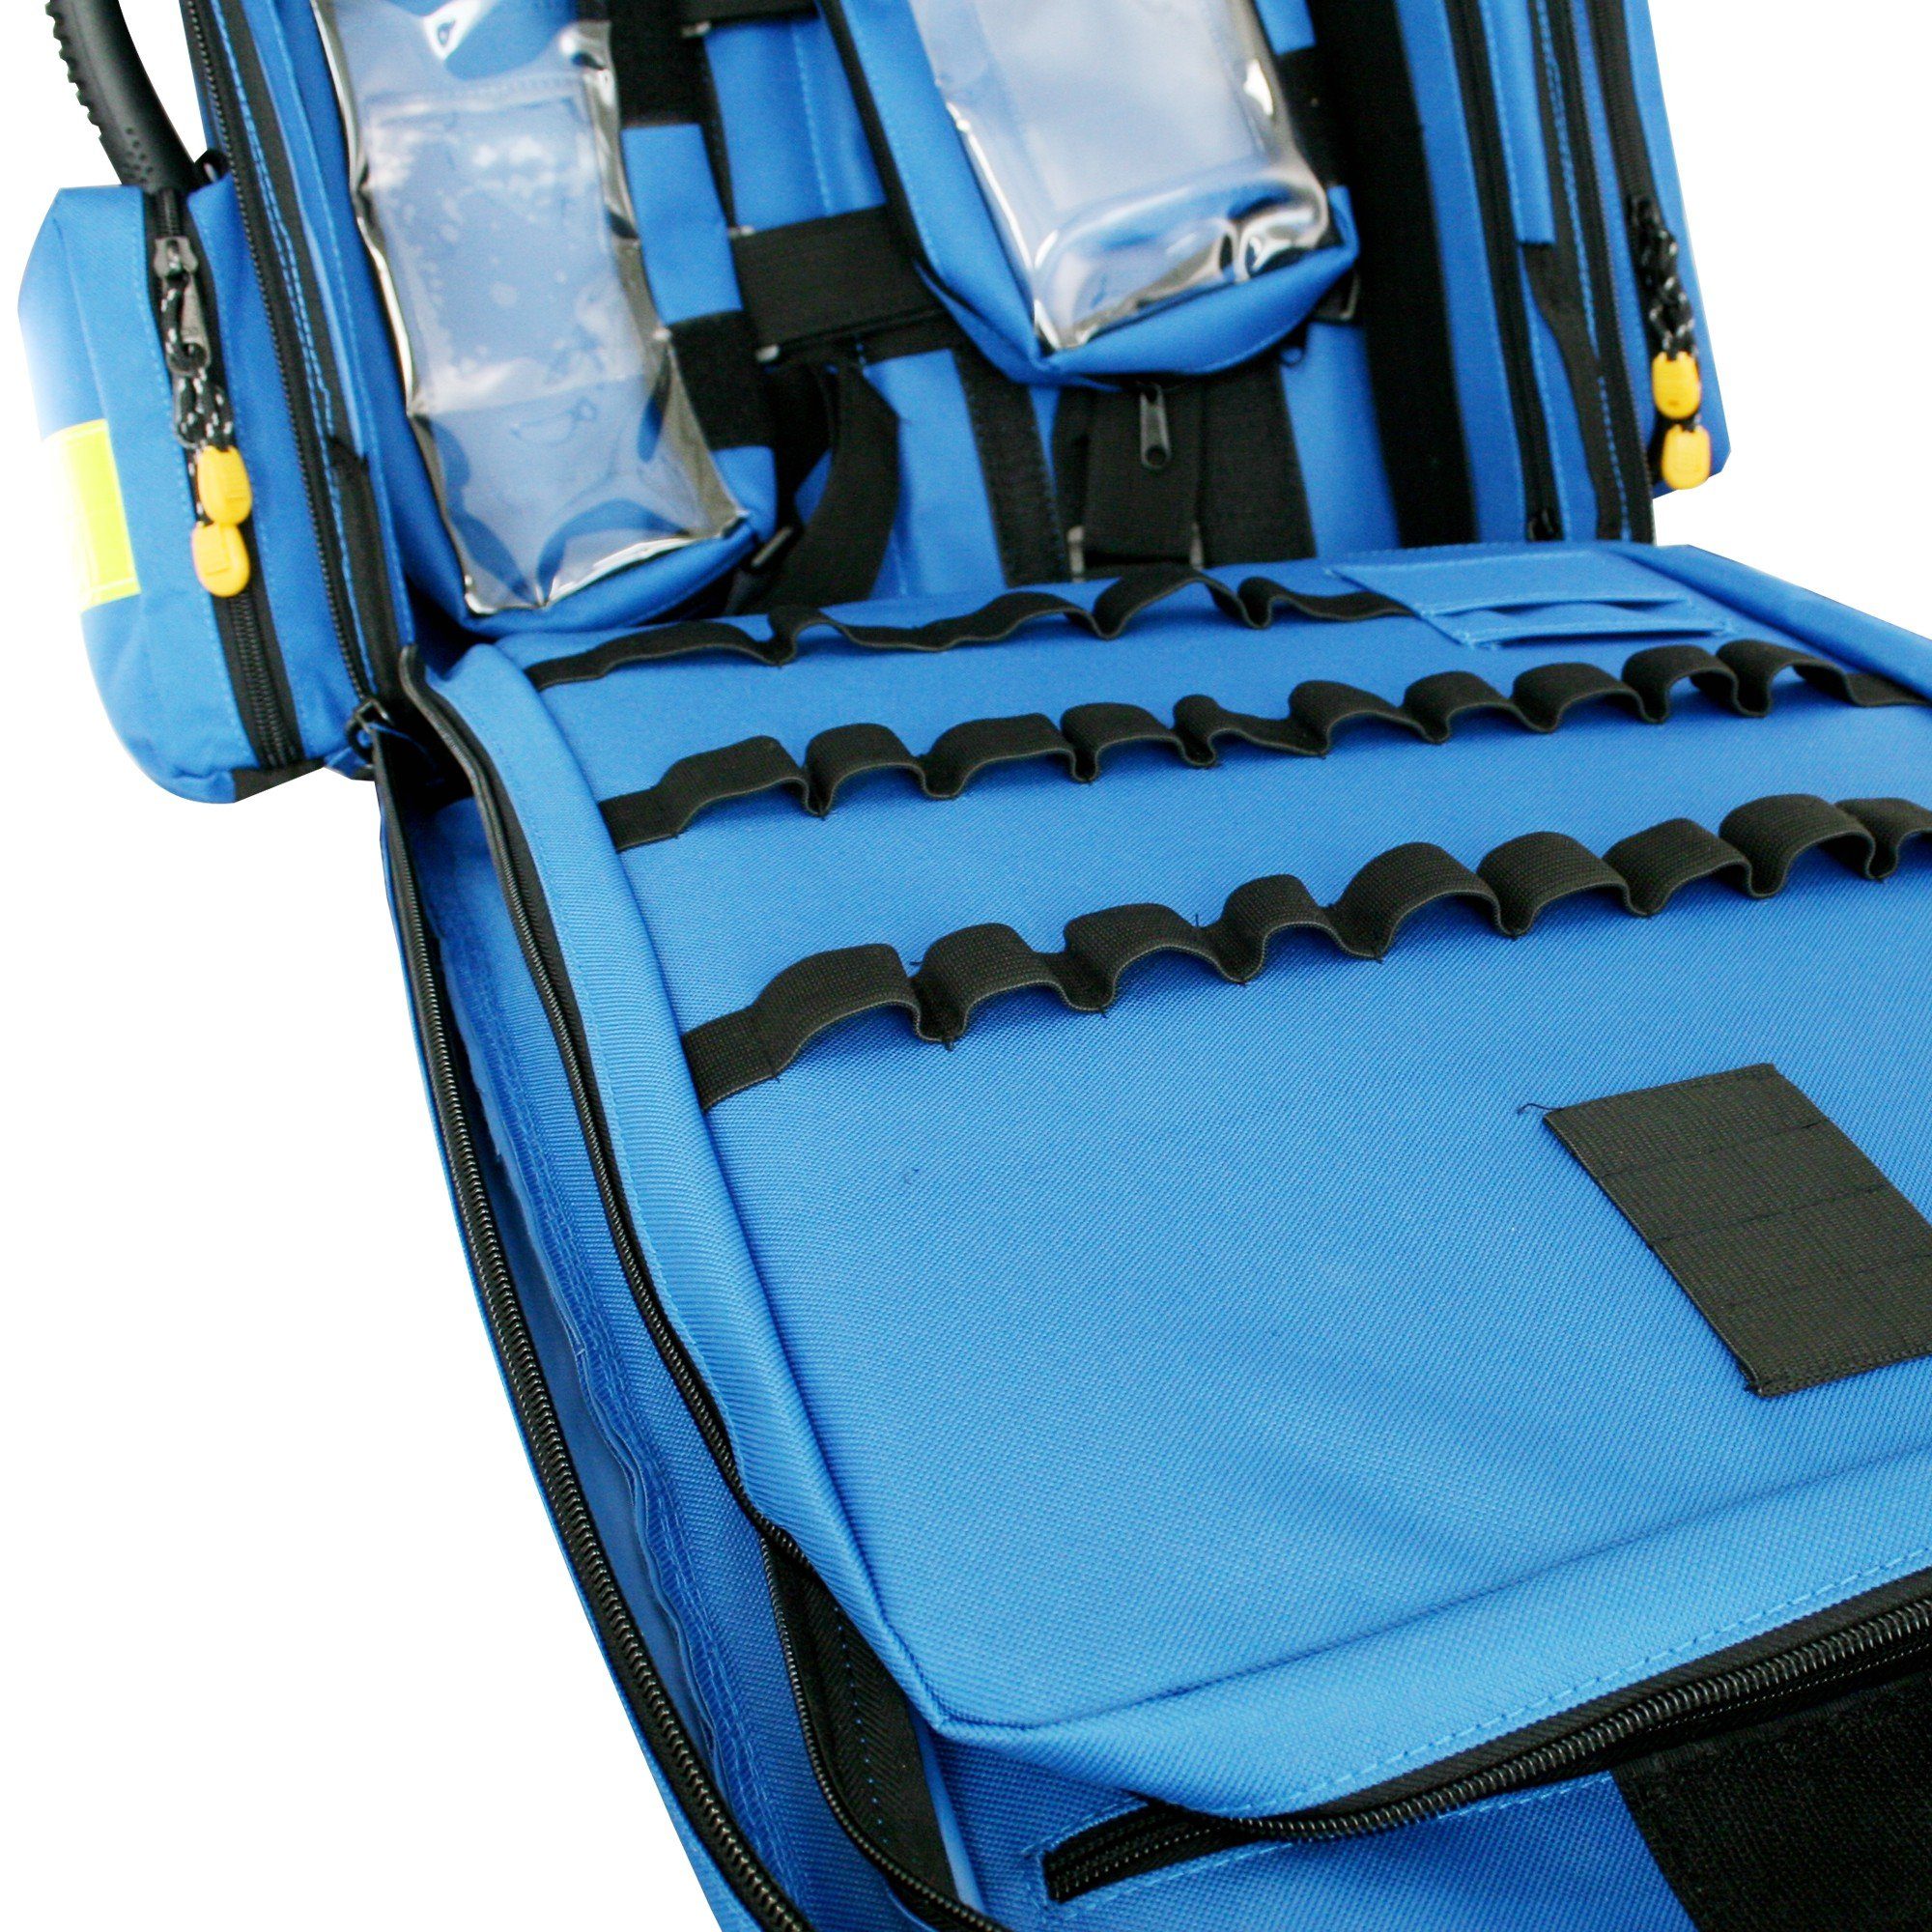 SANISMART Arzttasche MEDICUS 13157 gefüllt Notfallrucksack blau XL mit Nylon